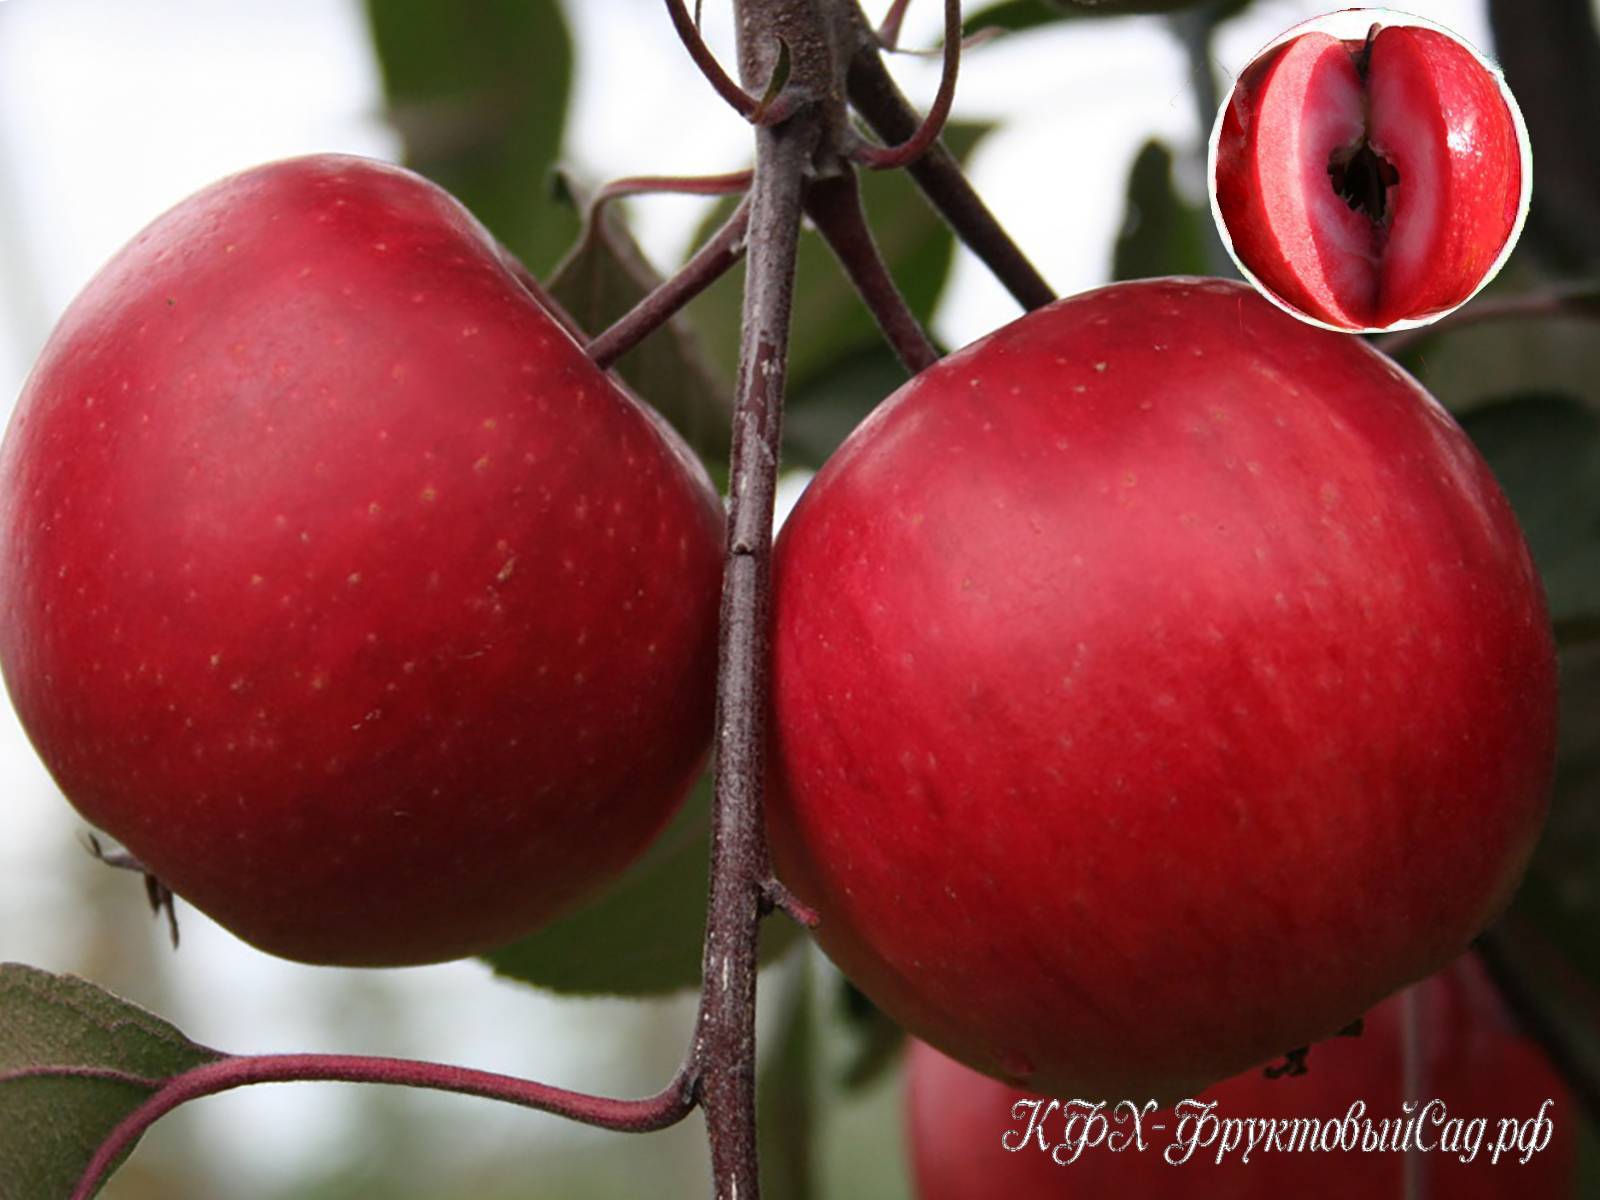 Сорта яблонь с плодами с красной мякотью: обзор, ценные свойства